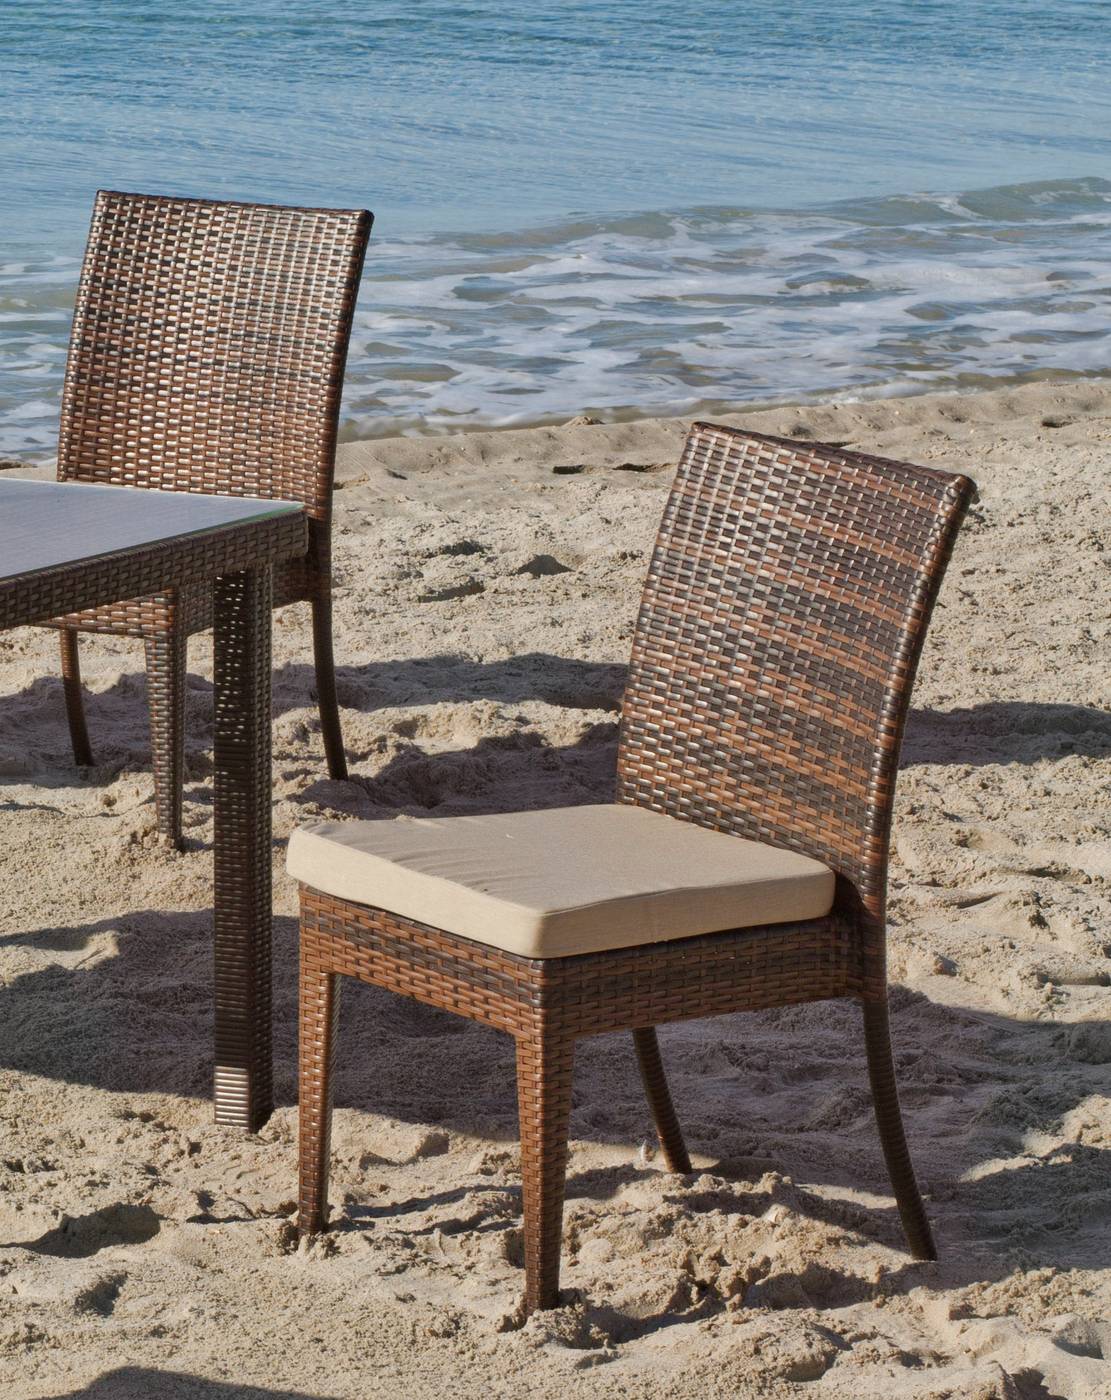 Conjunto Ratán Sint. Abedul - Cojunto de ratán sintético color marrón: mesa de 150 cm. con tapa de cristal templado + 4 sillas apilables + 4 cojines